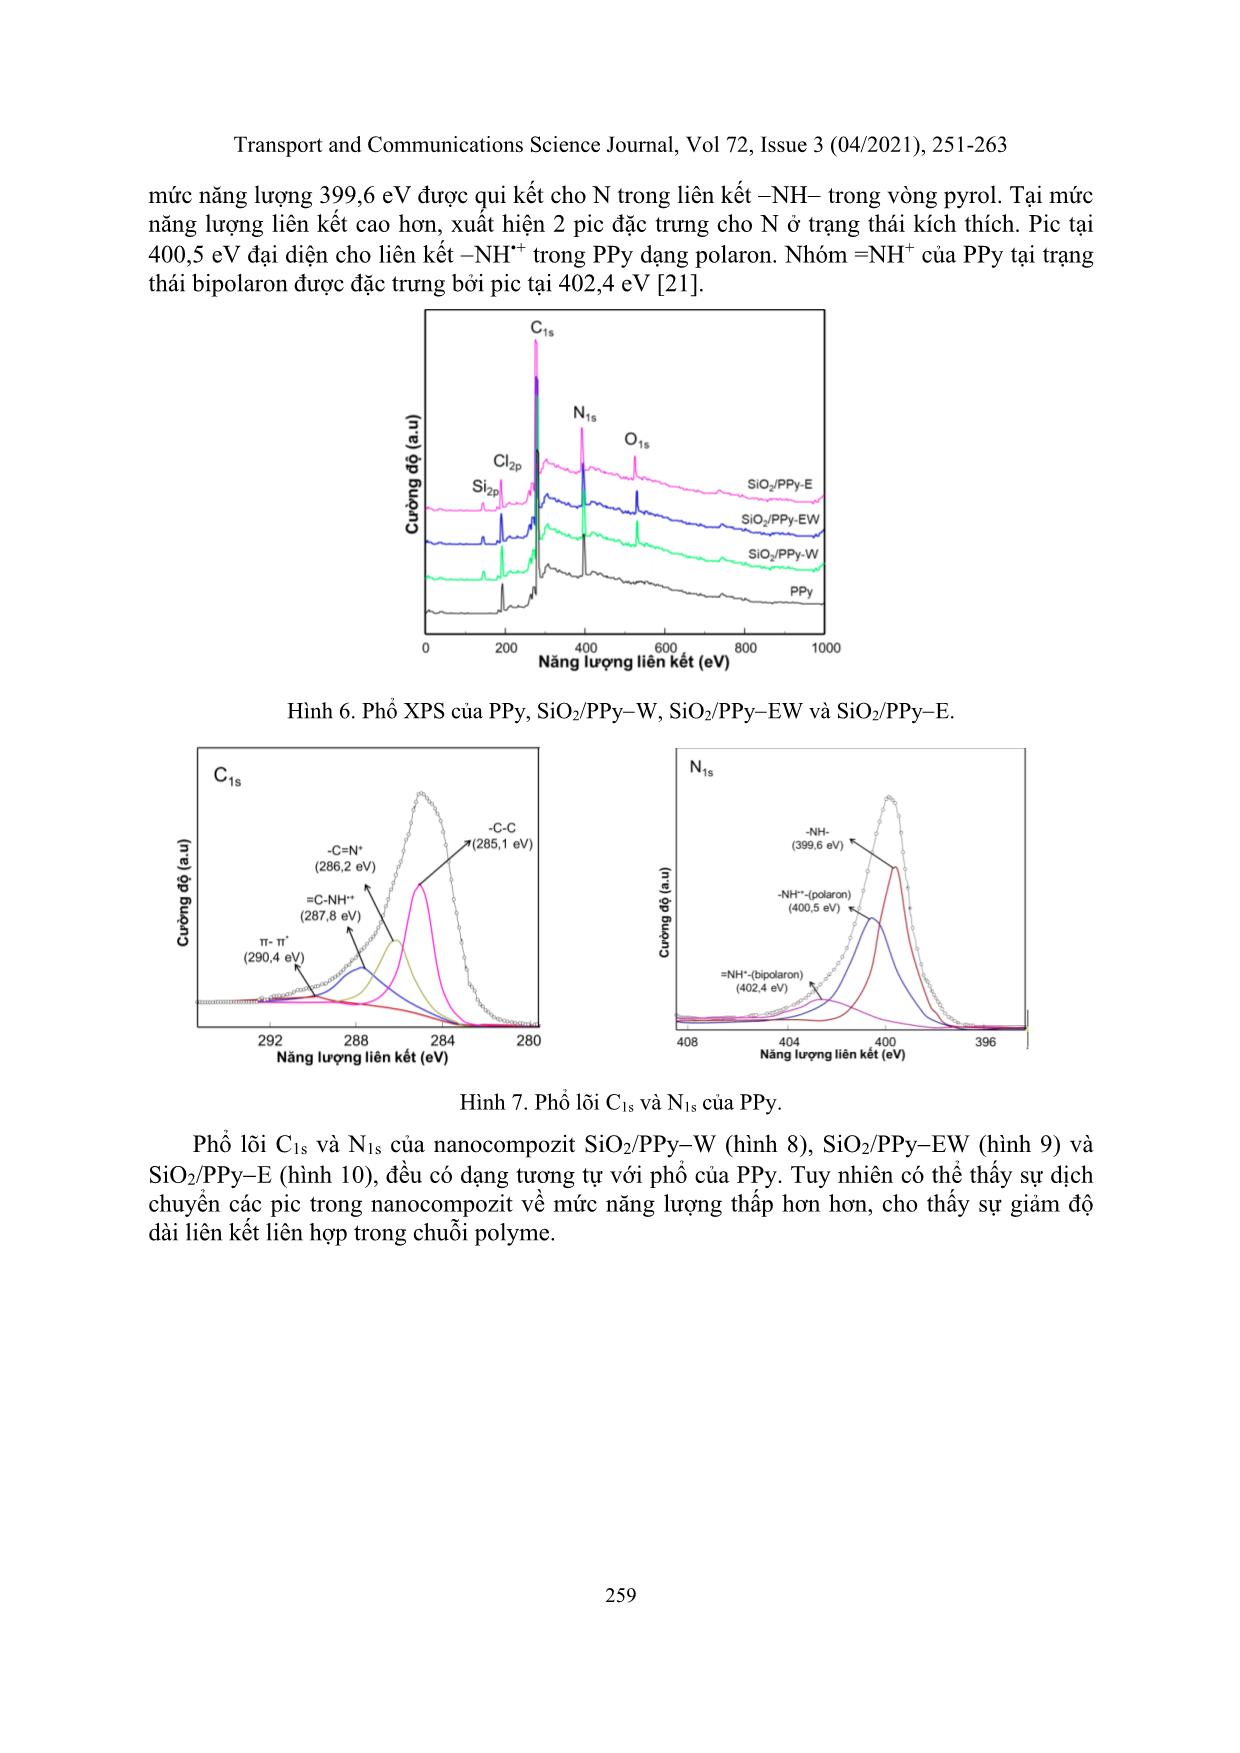 Nghiên cứu sự ảnh hưởng của dung môi đến quá trình tổng hợp nano composite SiO₂/PPY trang 9